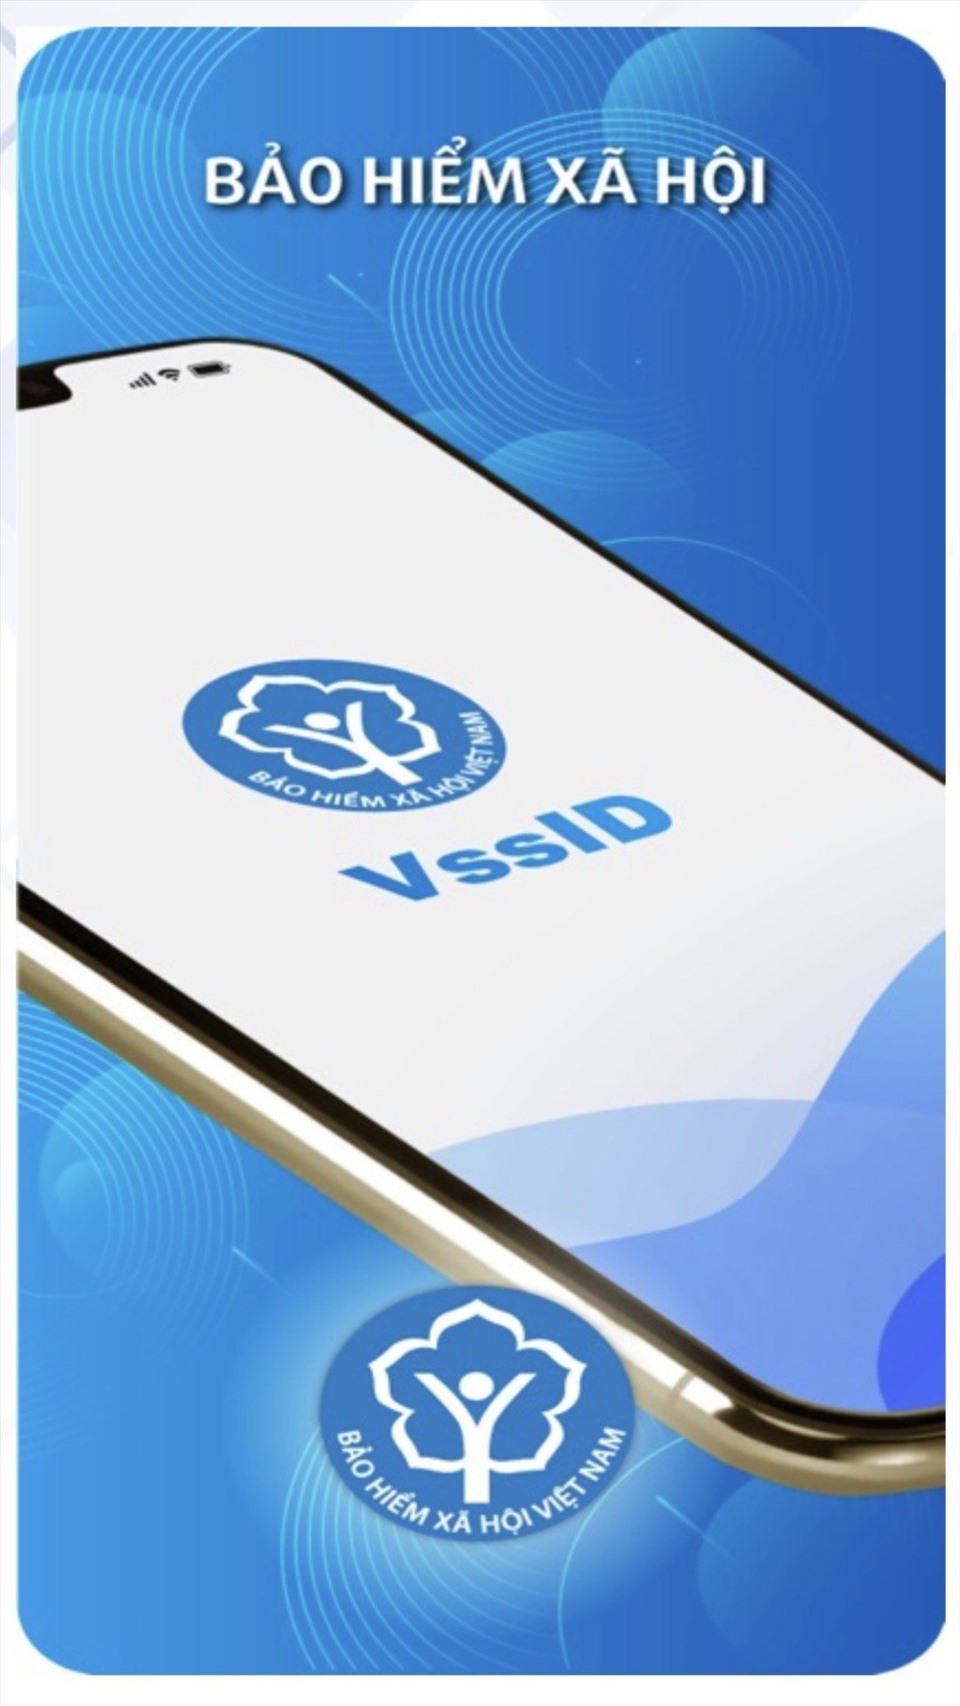 Từ 1.6, chính thức triển khai việc sử dụng hình ảnh thẻ BHYT trên ứng dụng VssID trong khám chữa bệnh. Ảnh: BHXH